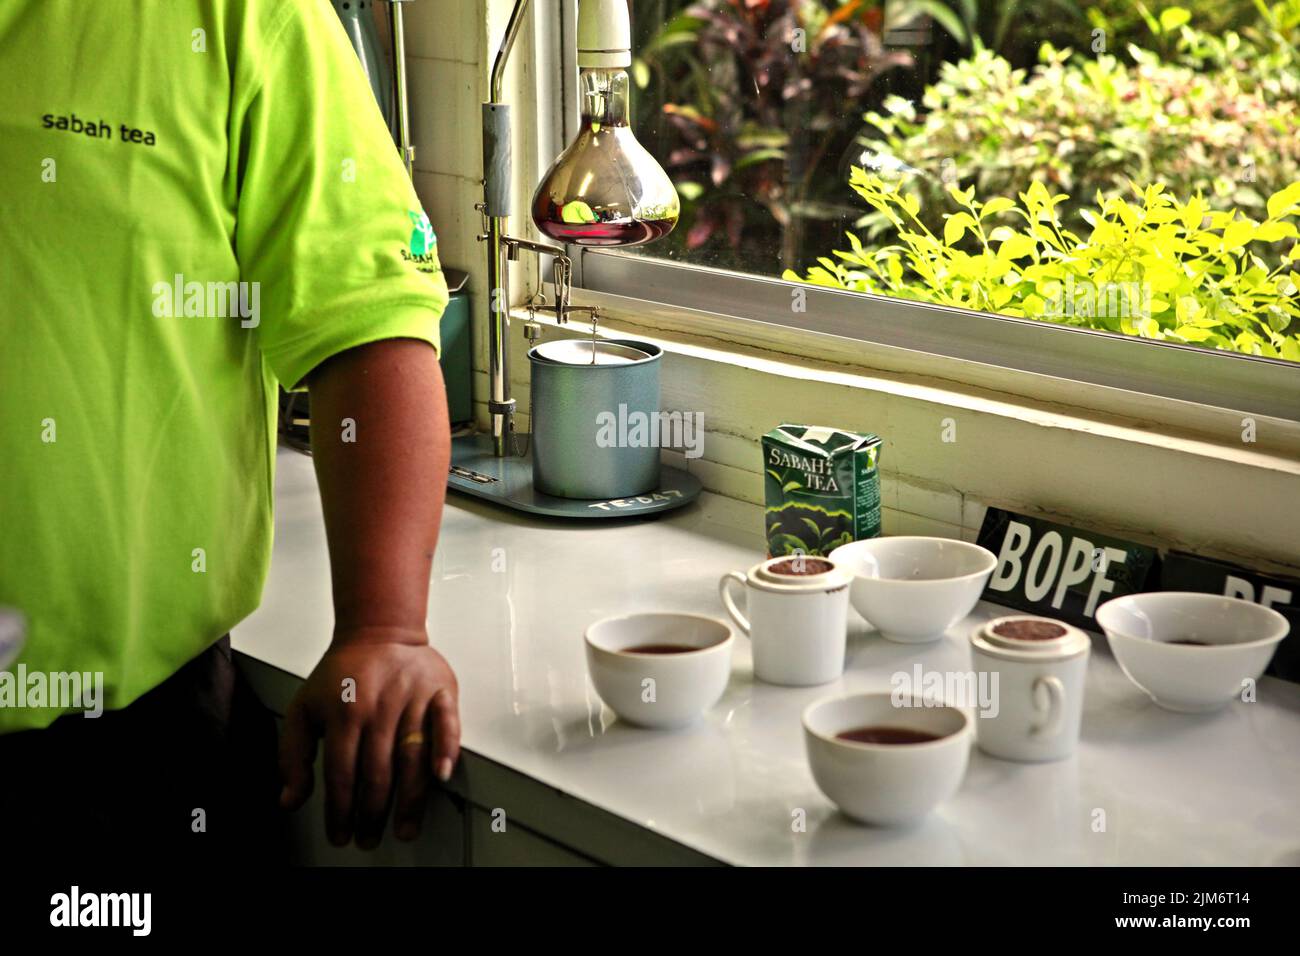 Tazze contenenti tè per il controllo di qualità presso la fabbrica di tè Sabah, l'impianto di lavorazione dei materiali raccolti dalla fattoria di tè biologico, una parte del giardino del tè Sabah a Sabah, Malesia. Foto Stock